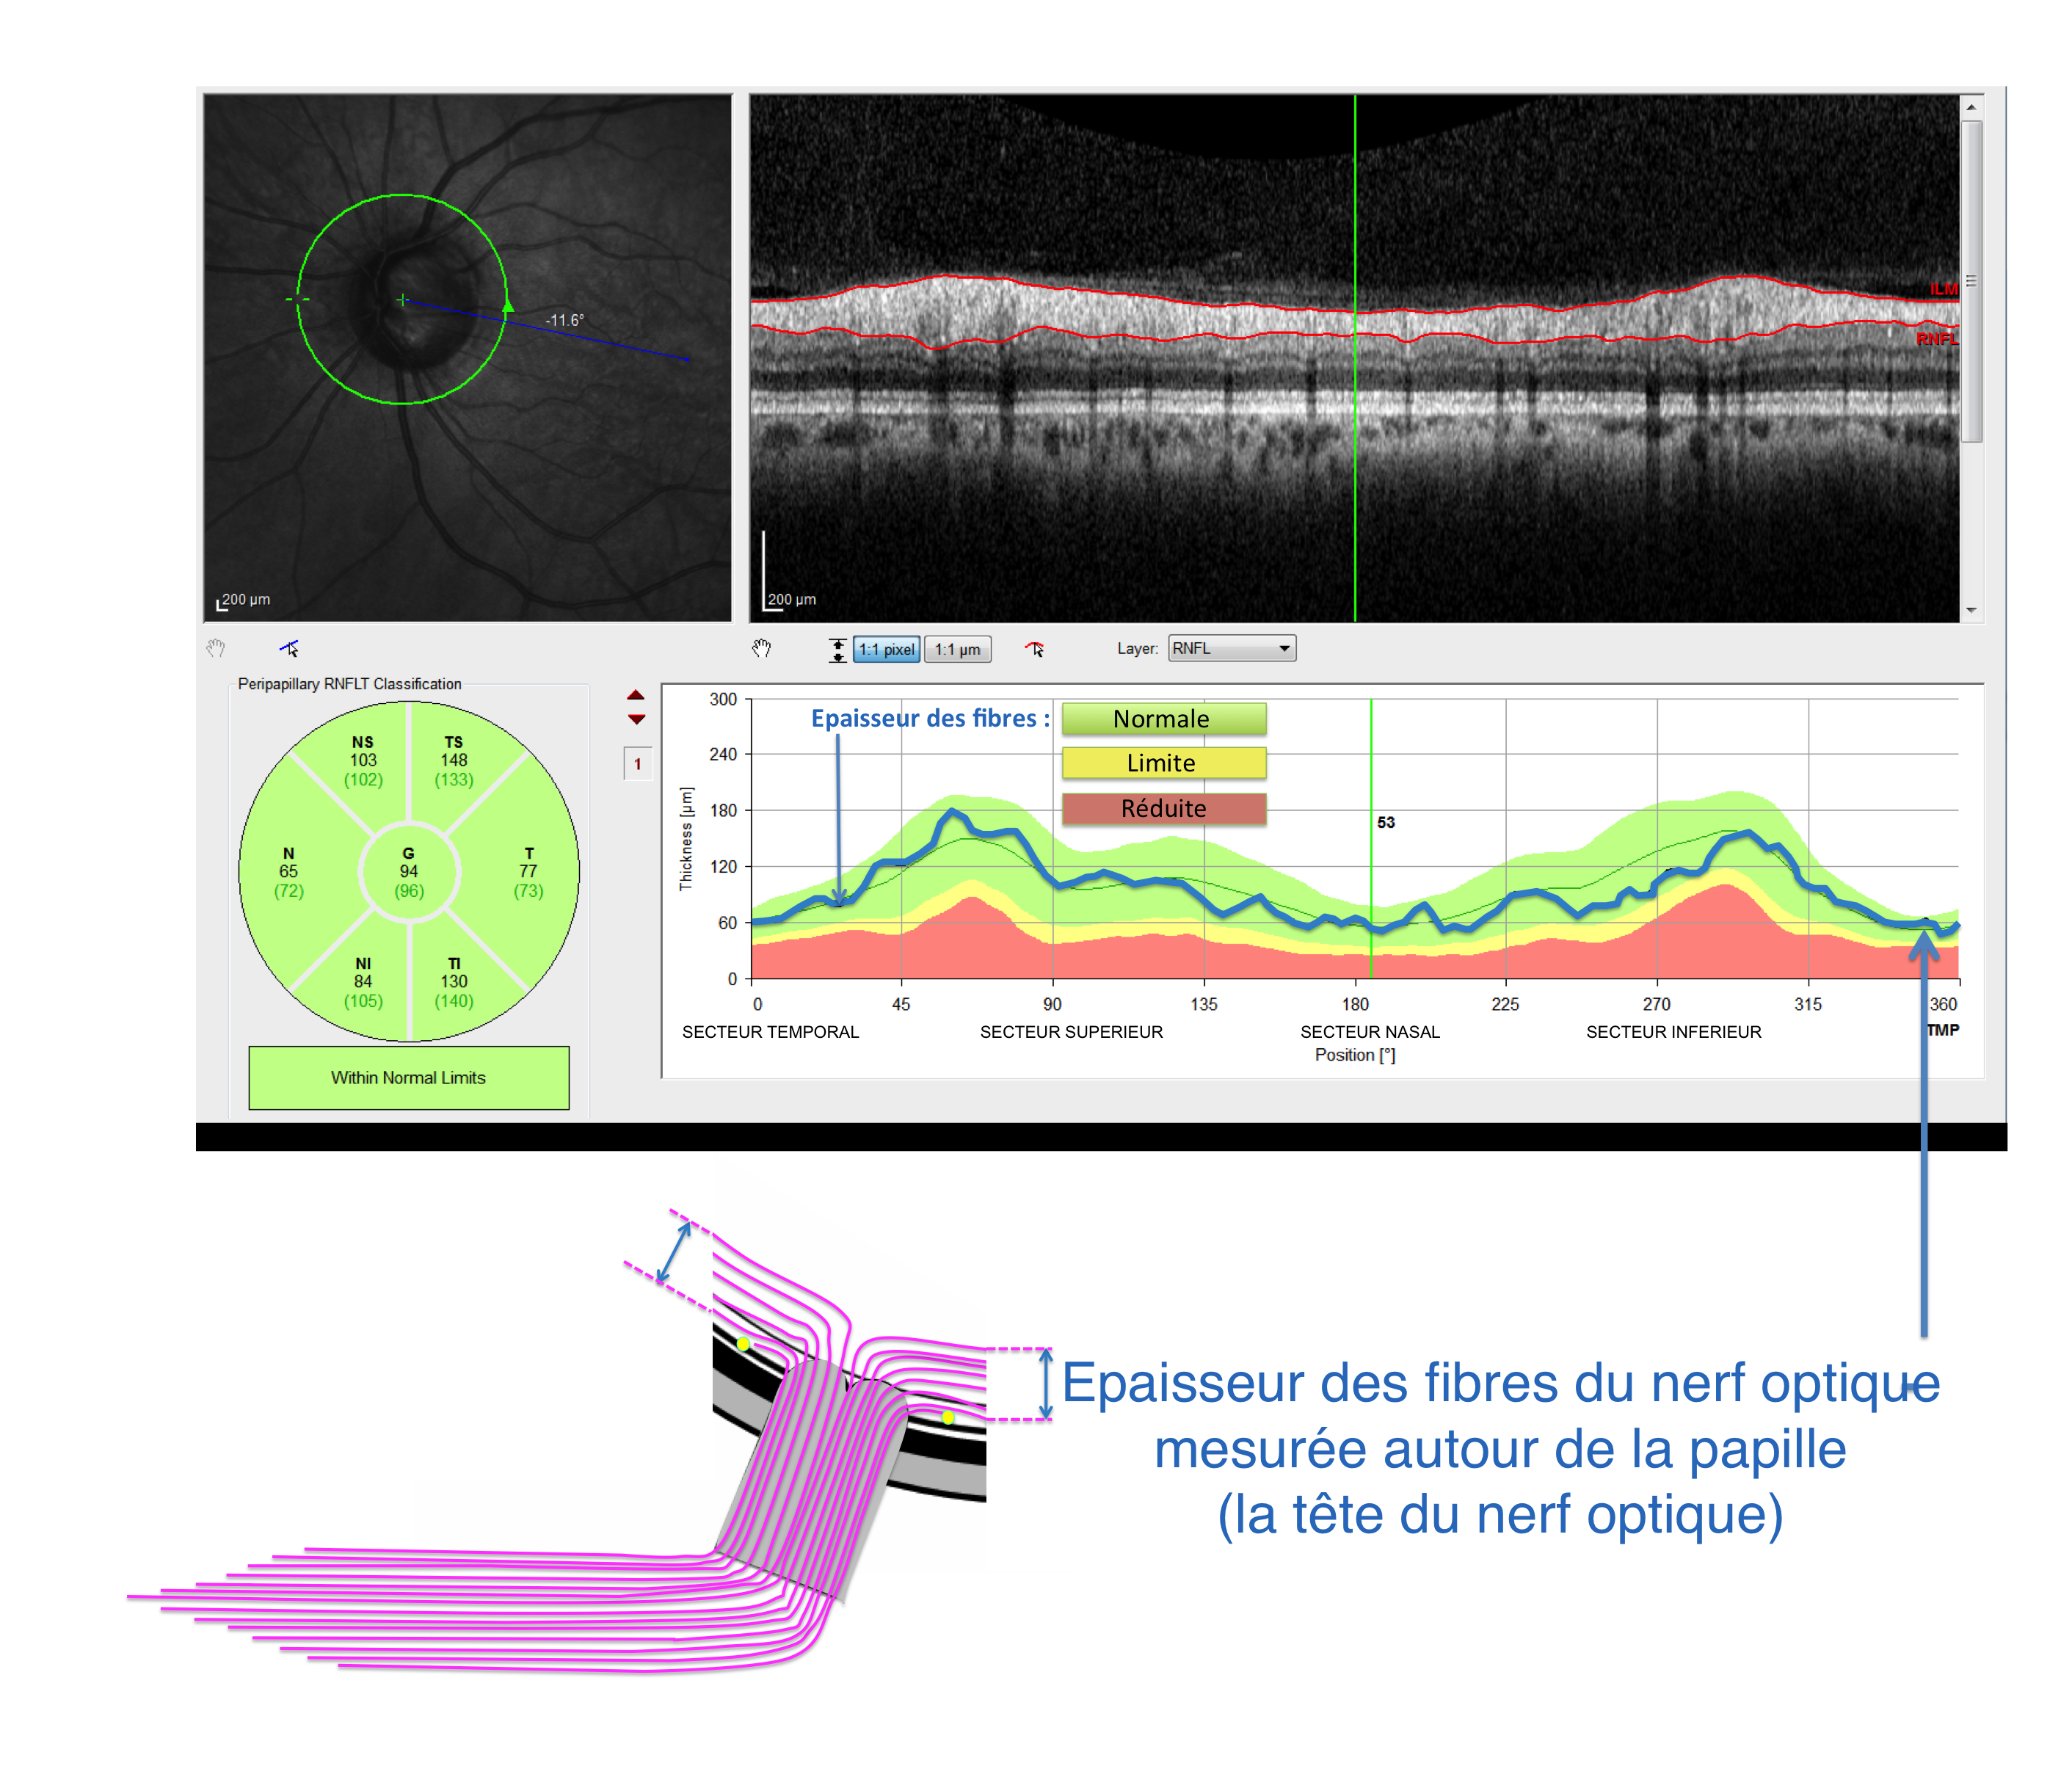 hypertonies intra oculaires et glaucomes : analyse en OCT de l'épaisseur des fibres du nerf optique utile au diagnostic et au suivi évolutif